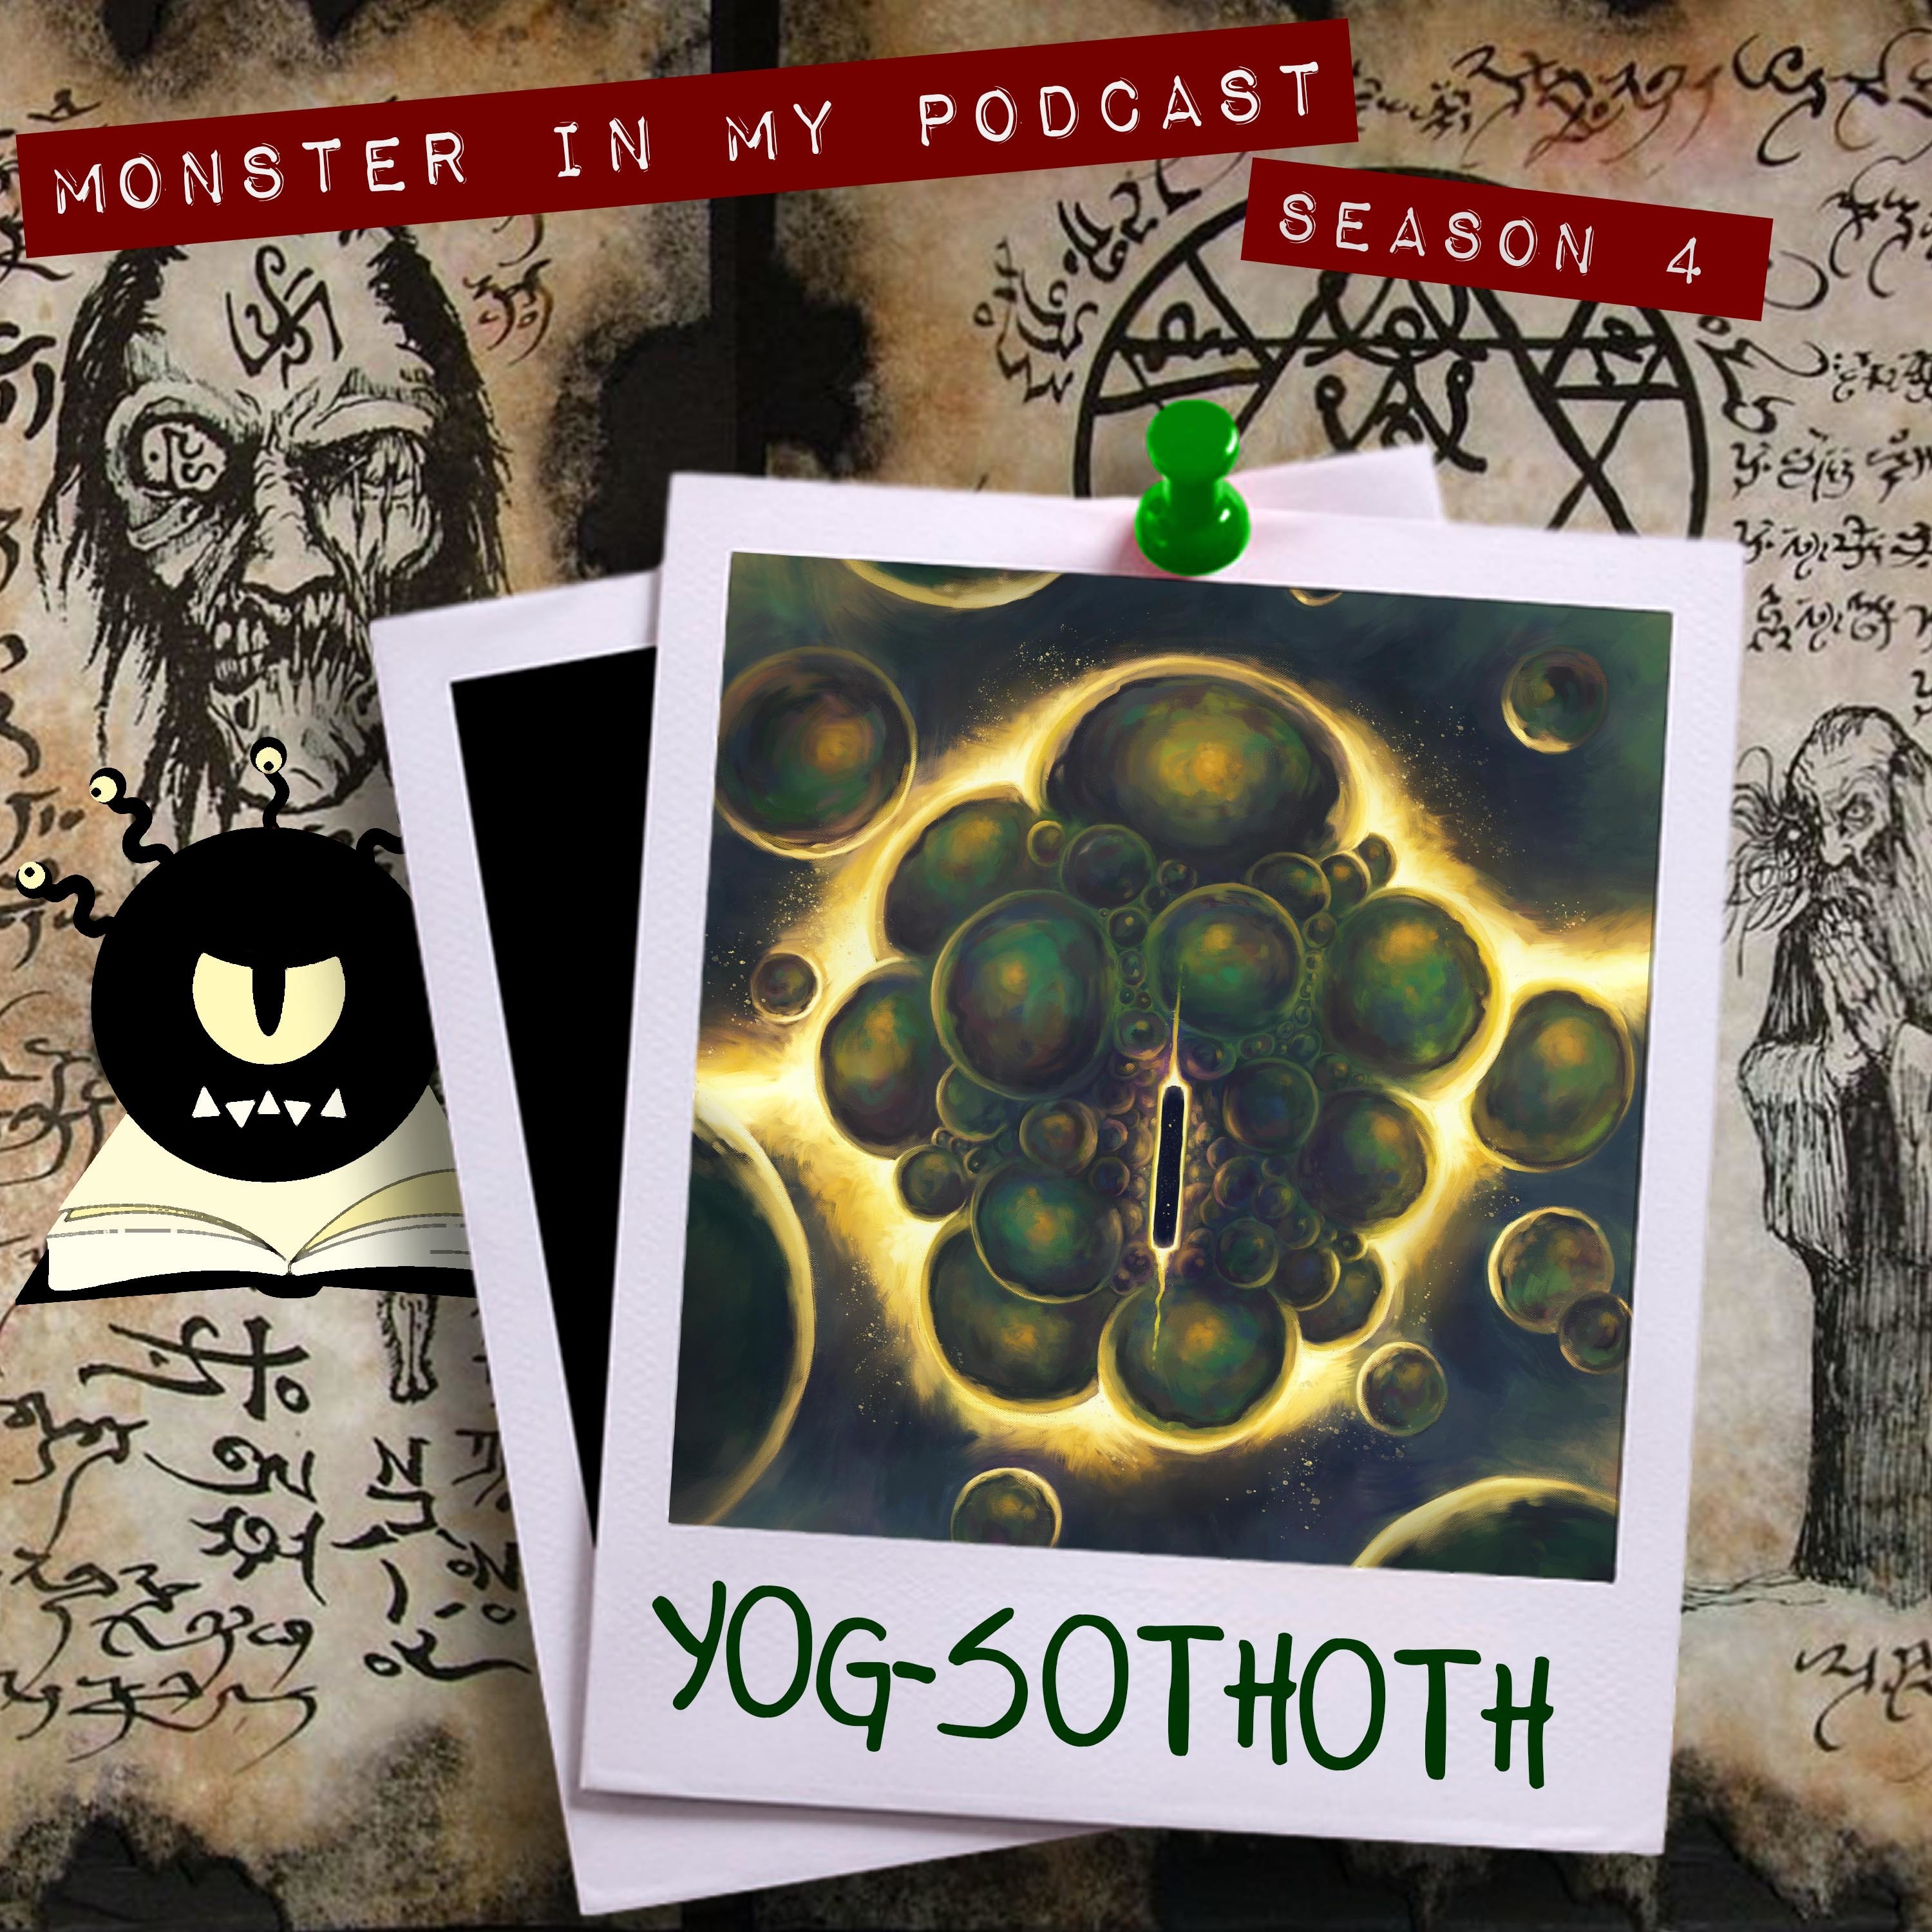 Yog-Sothoth